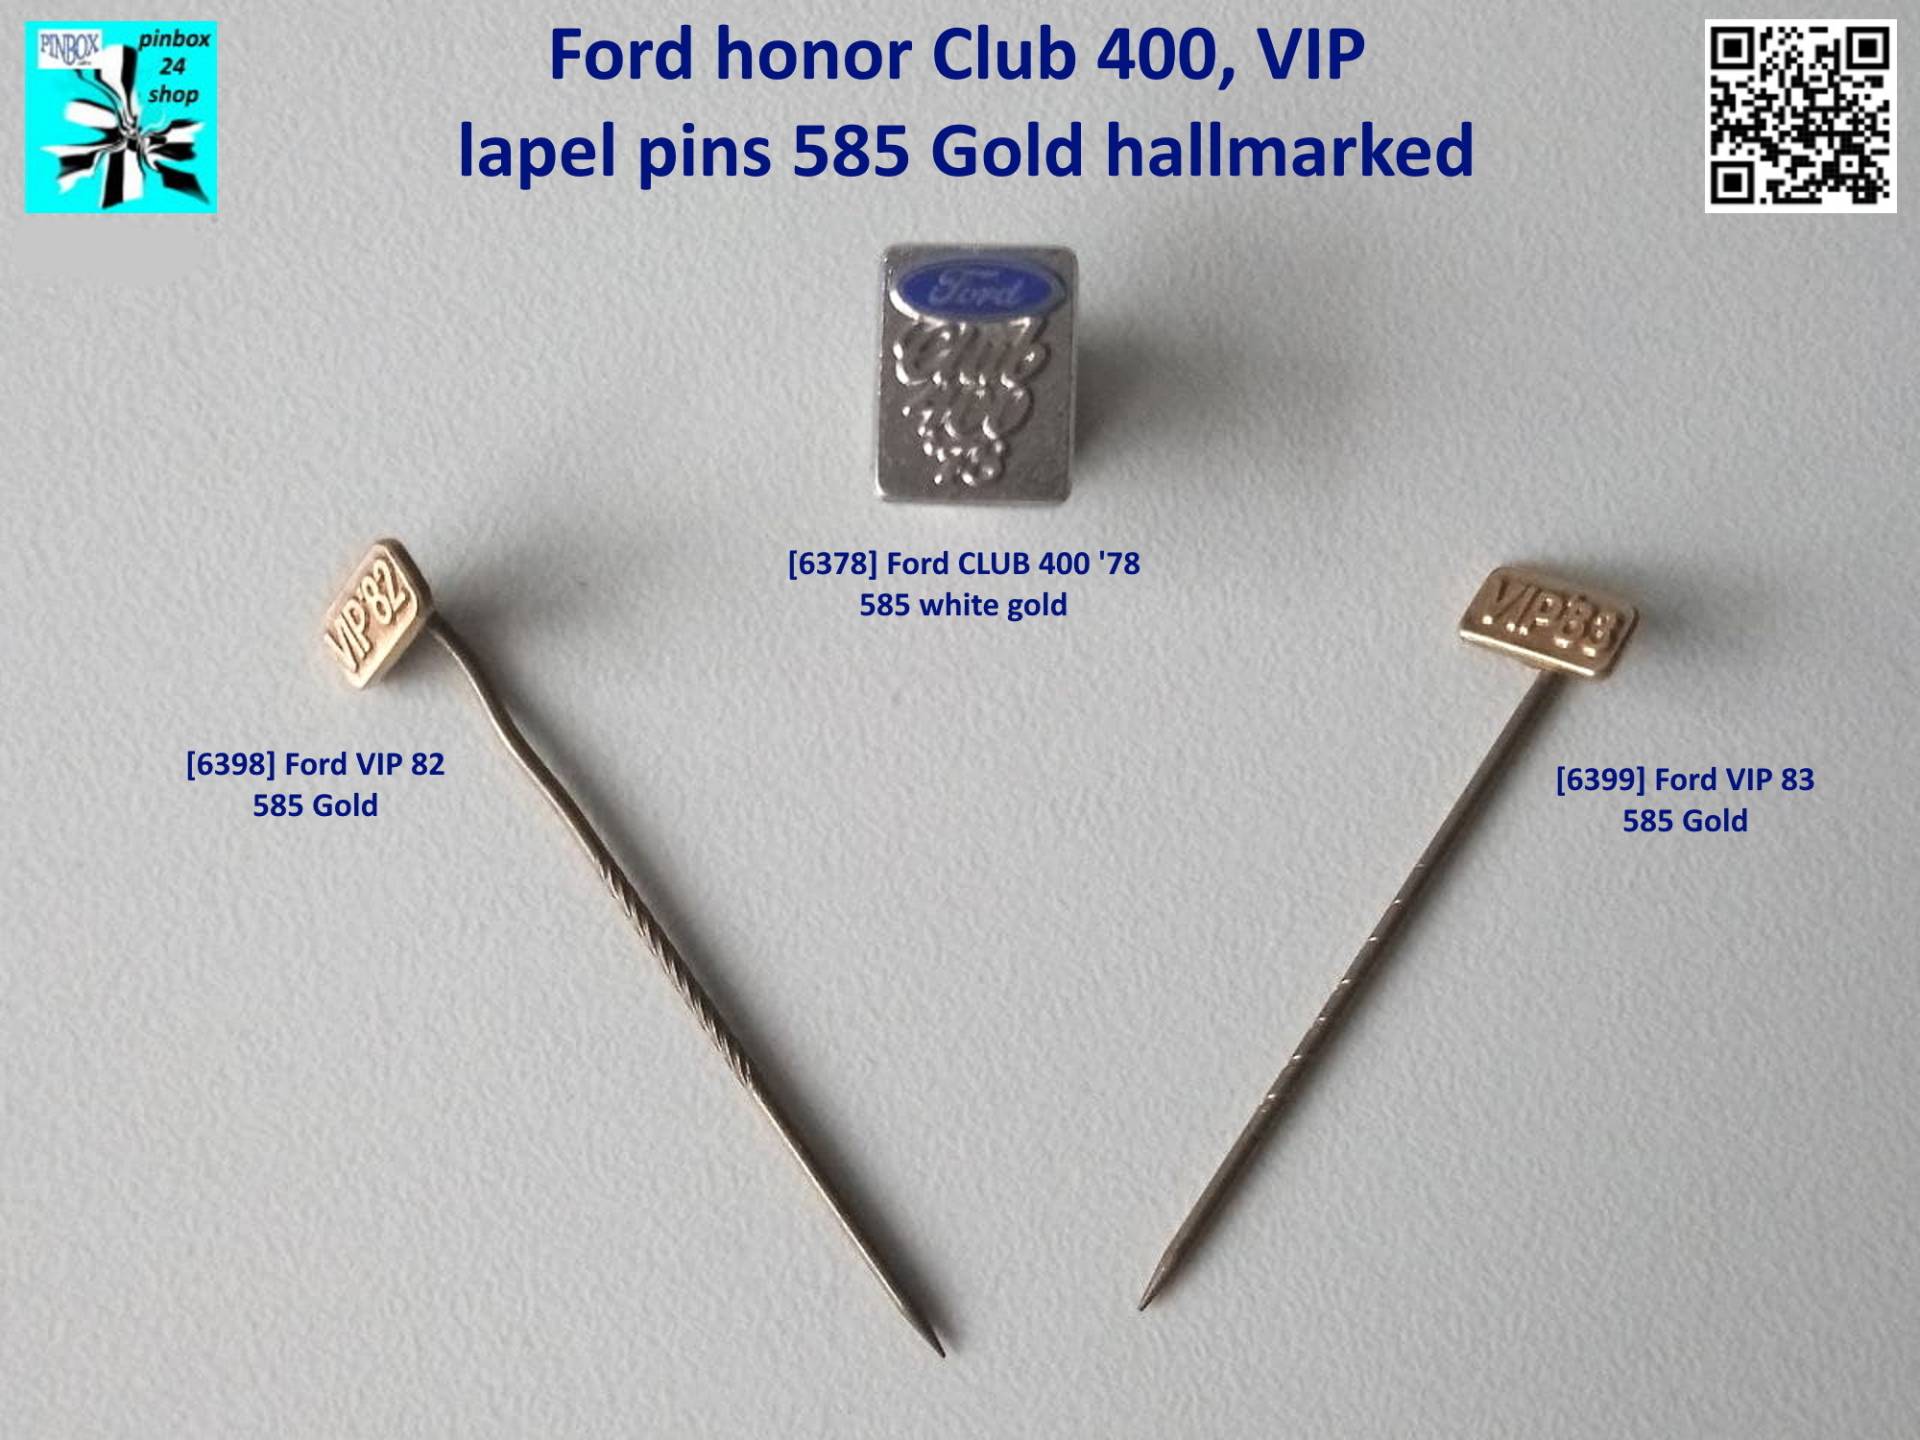 Ford Honor Club 400, Vip Anstecknadeln 585 Gold Geprägt von pinbox24shop